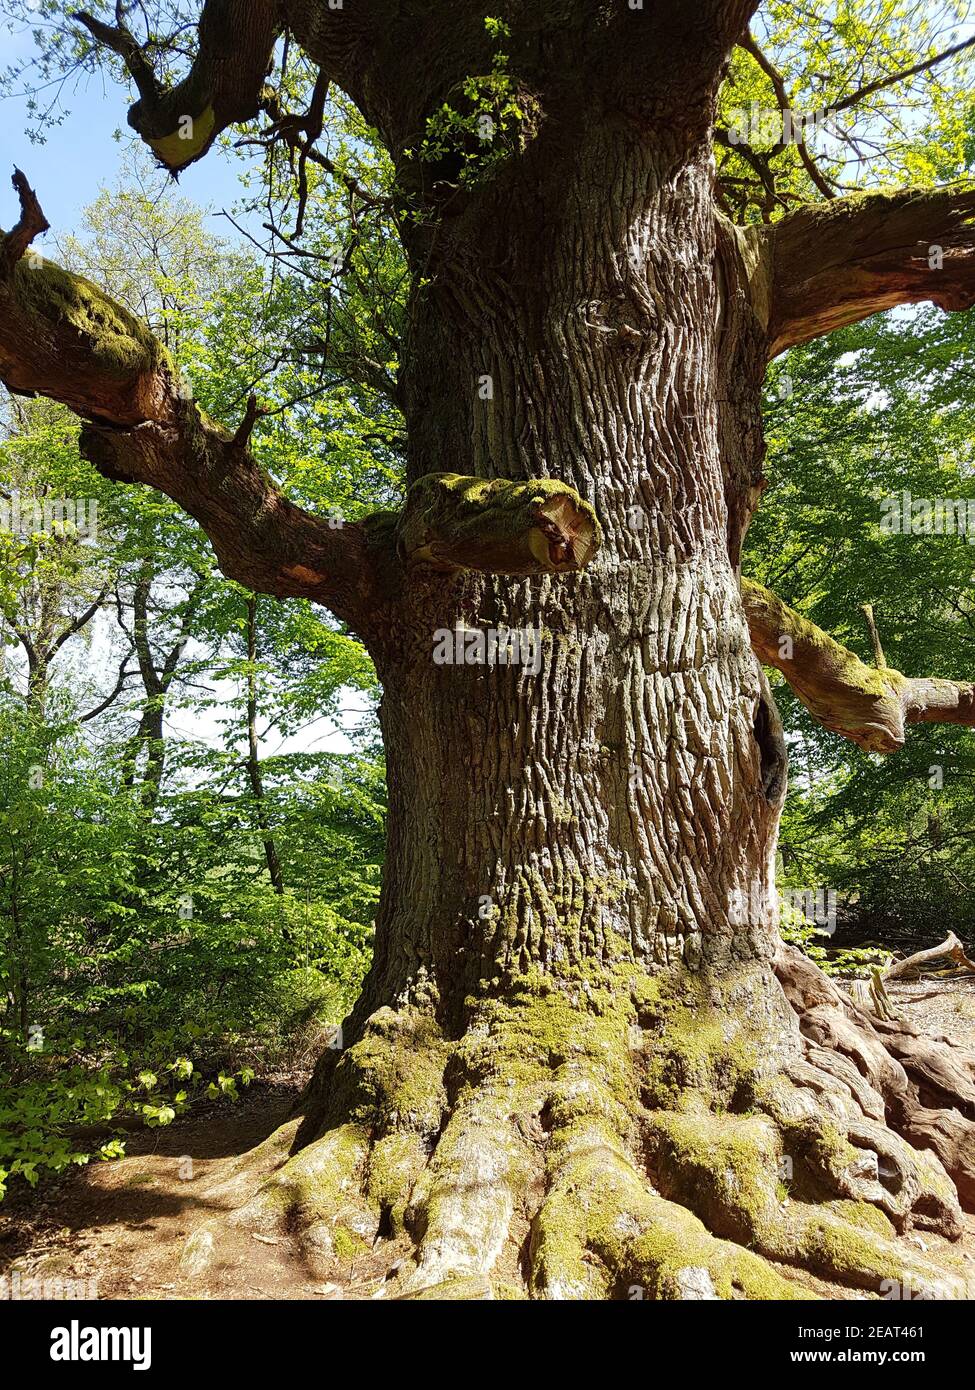 Eichenbaum, Quercus  Robur Stock Photo